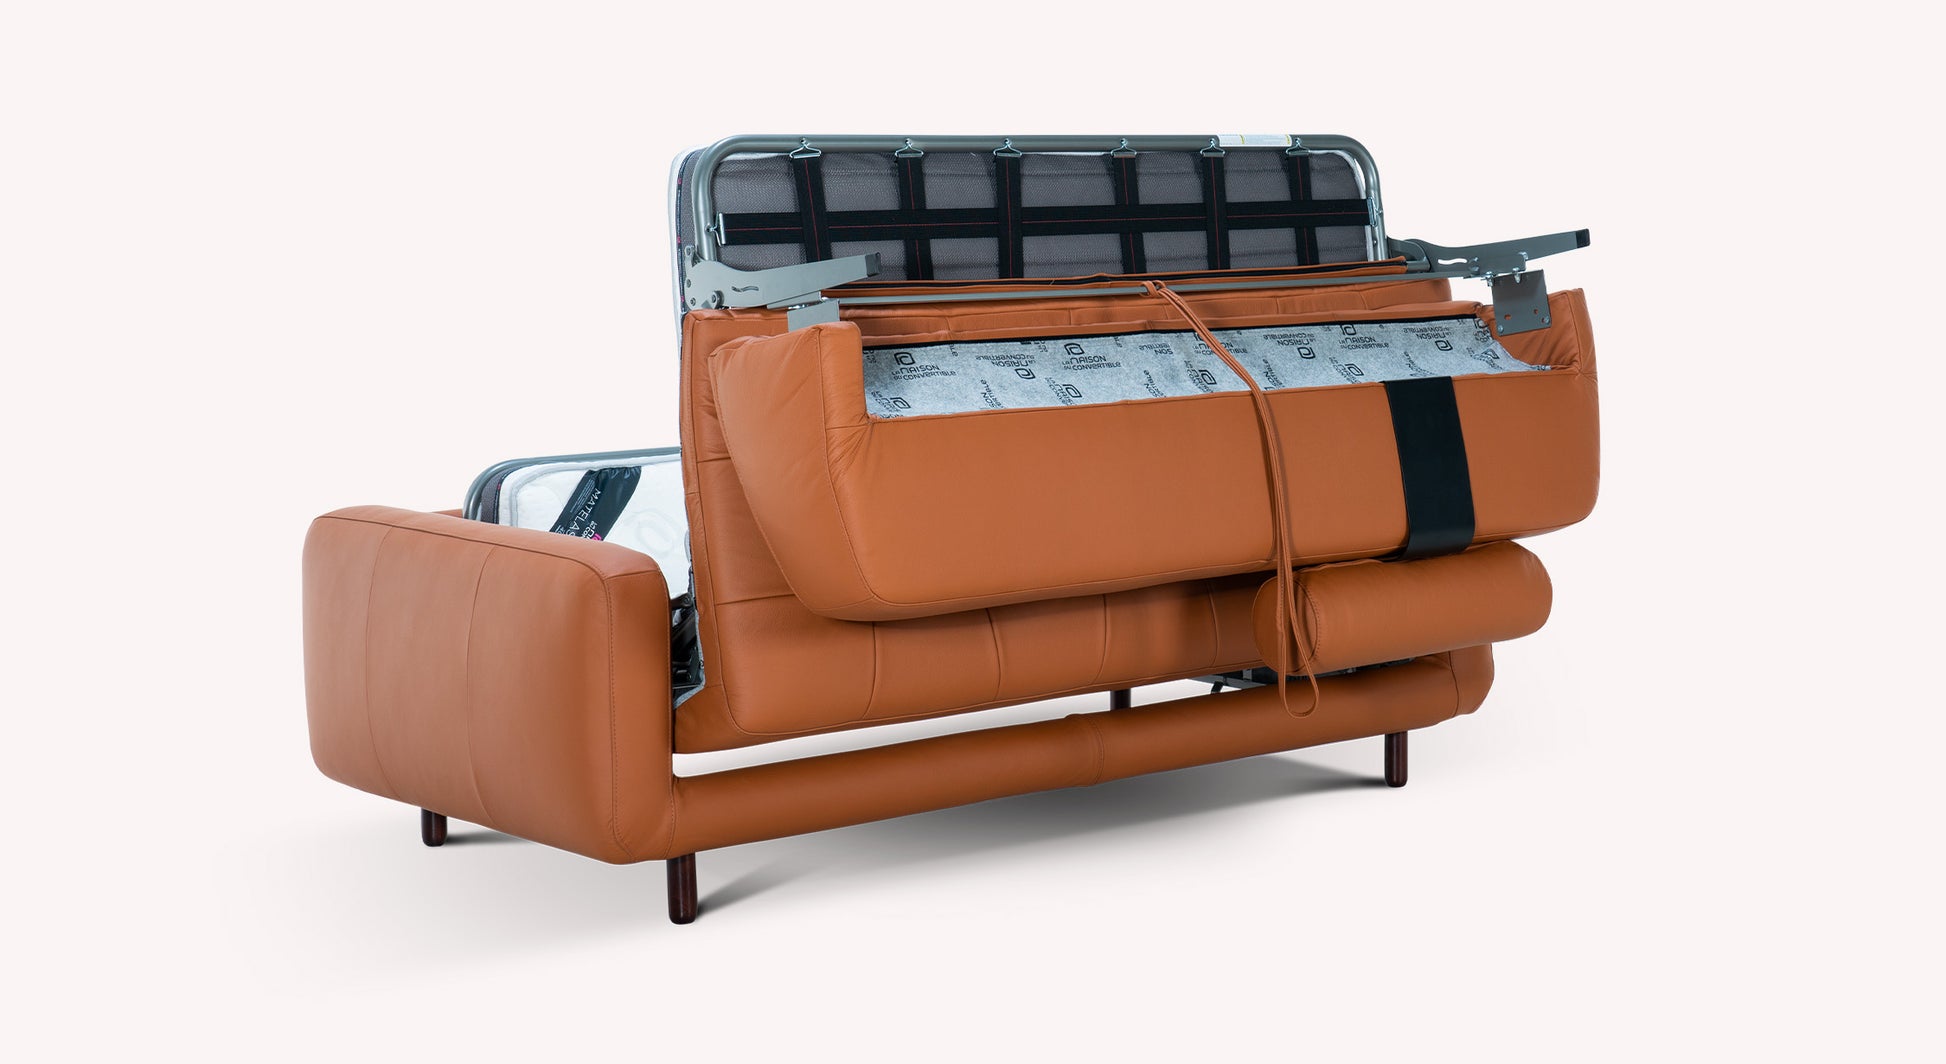 Canapé lit haut de gamme ouverture italienne COGNAC Dimensions L